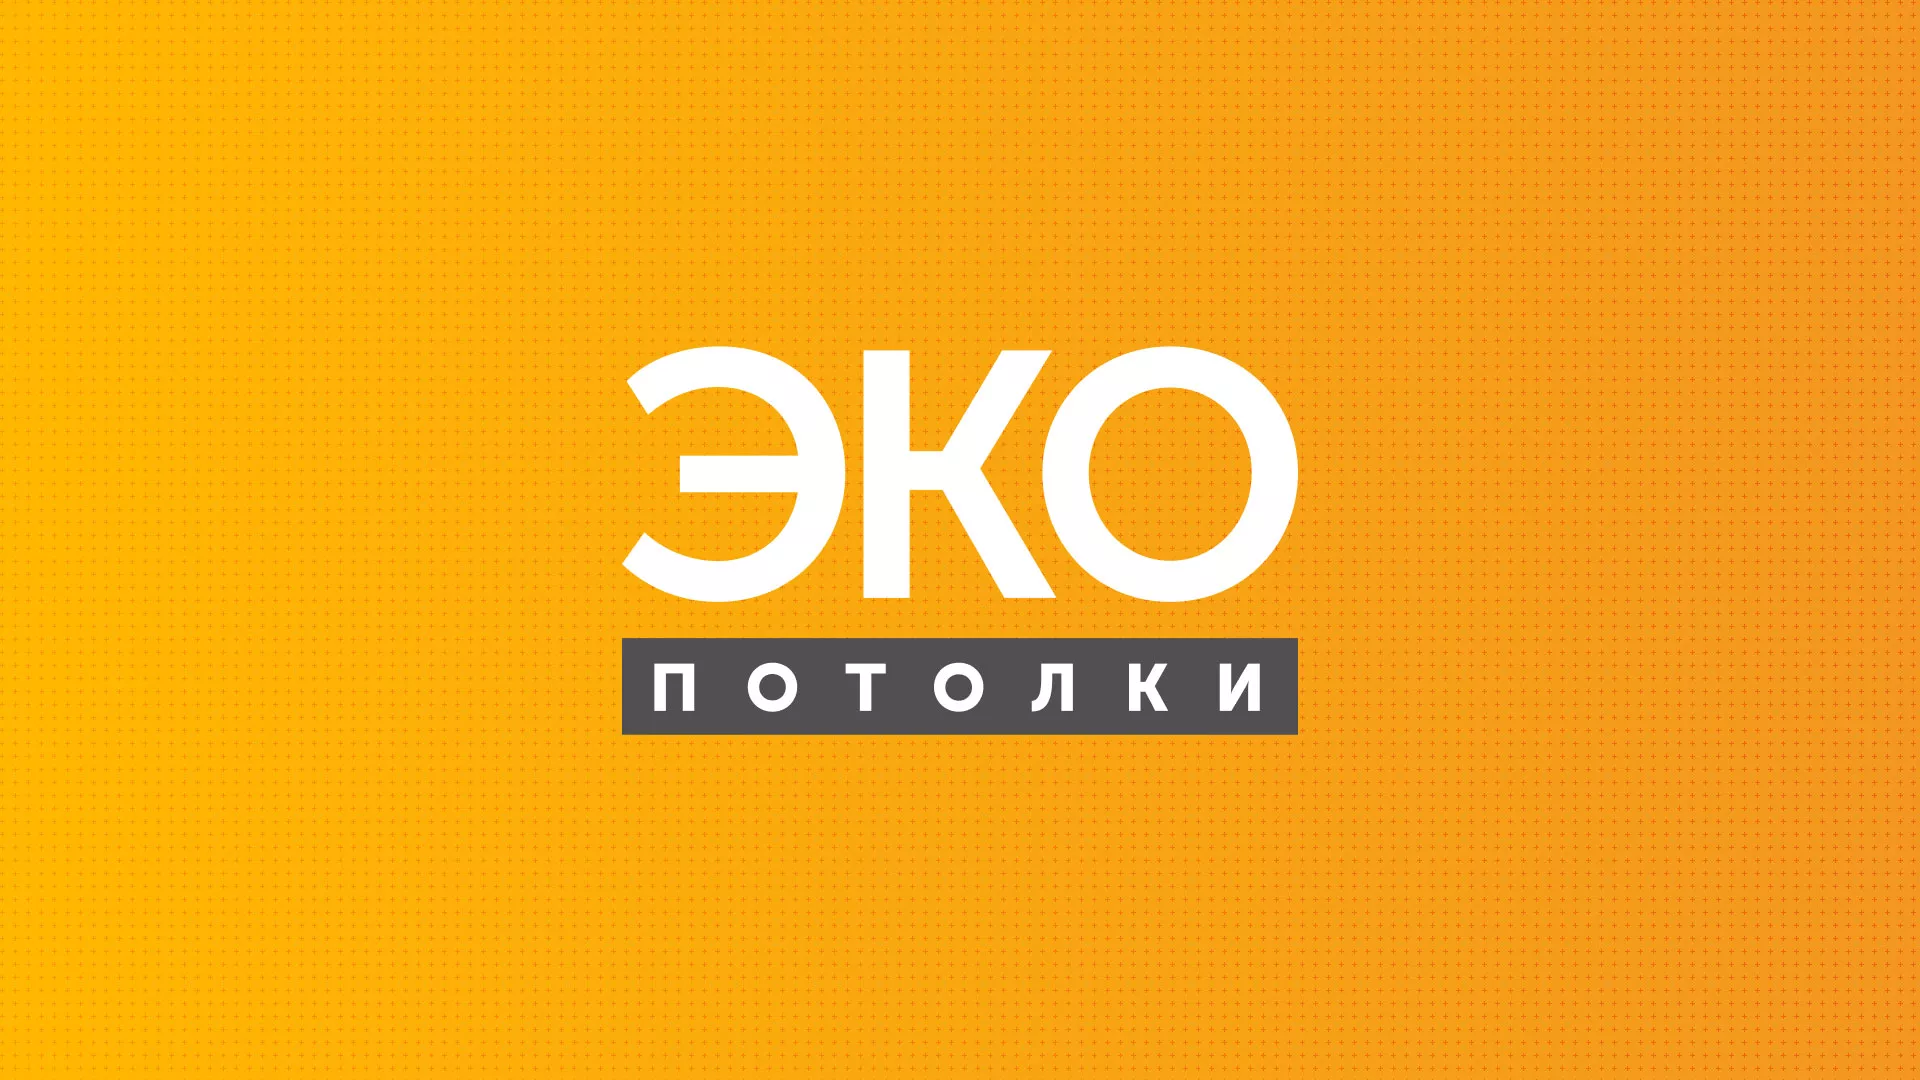 Разработка сайта по натяжным потолкам «Эко Потолки» в Гороховце